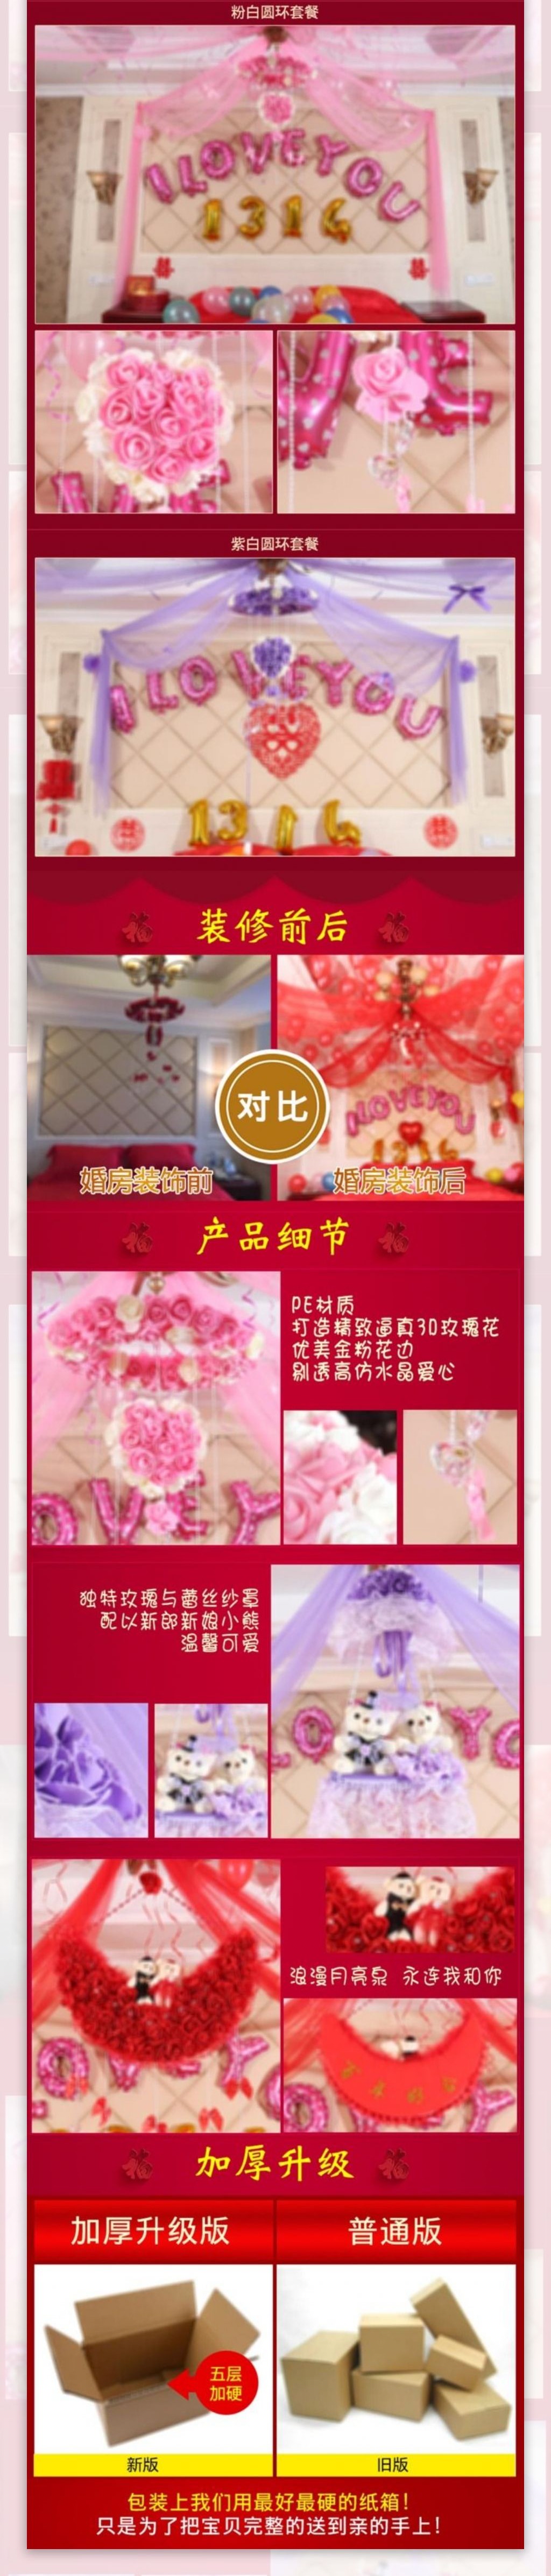 中国风花球套餐婚庆用品详情页模版